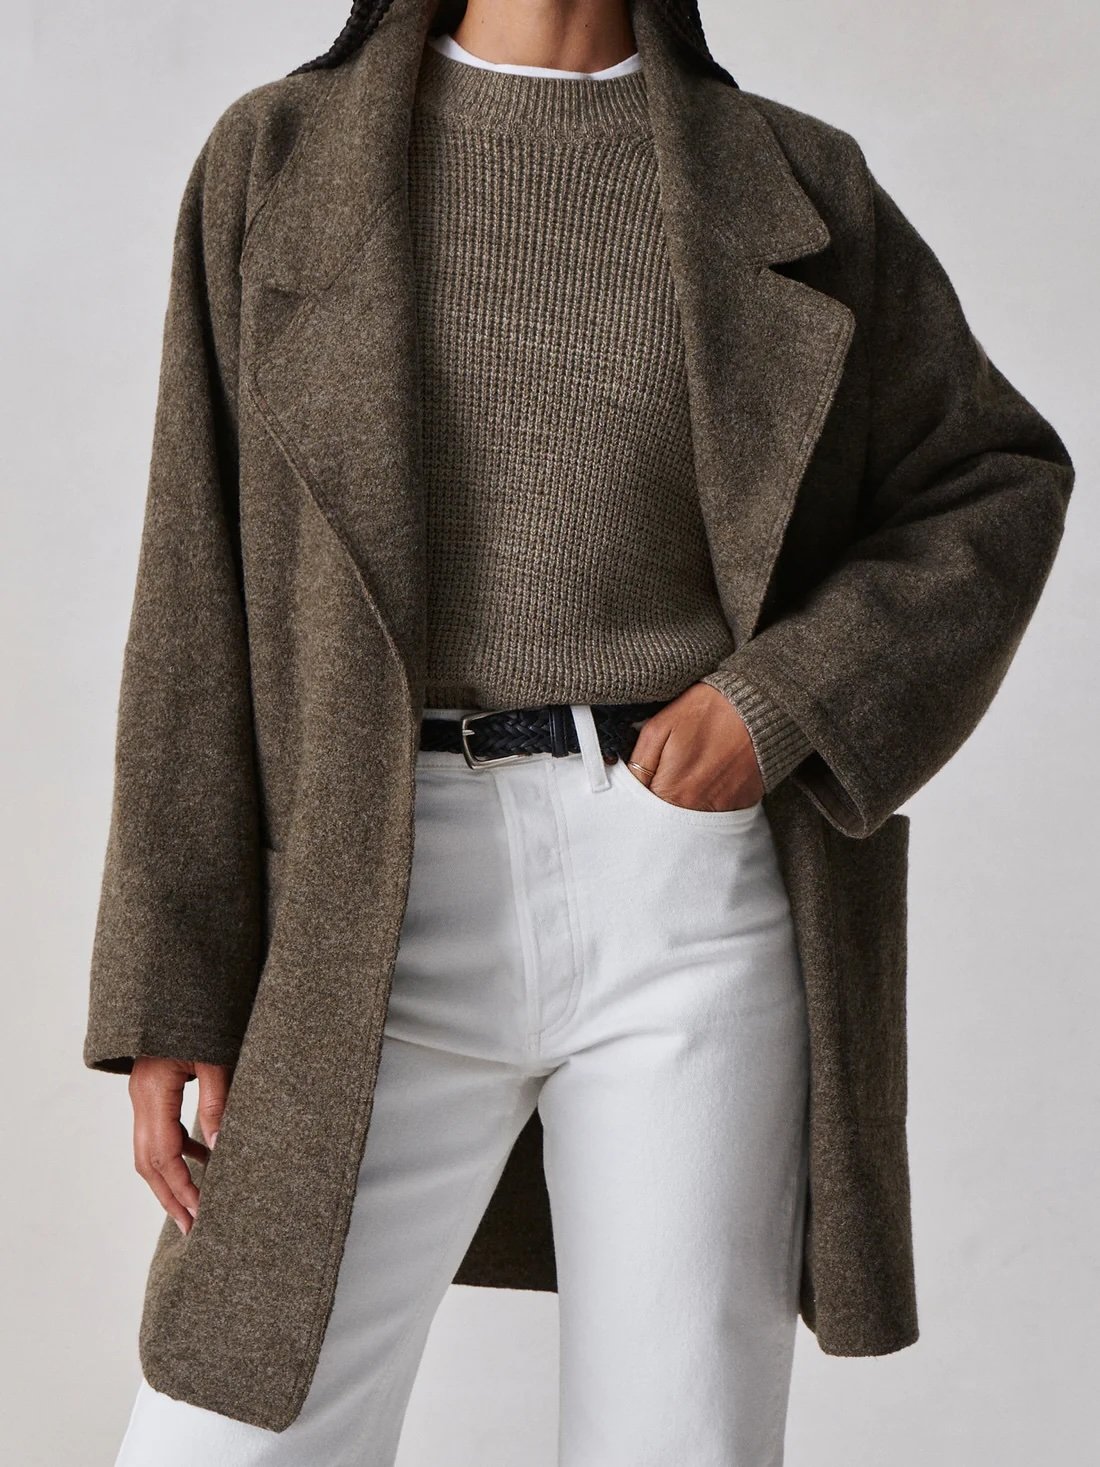 Blanket Coat, $328